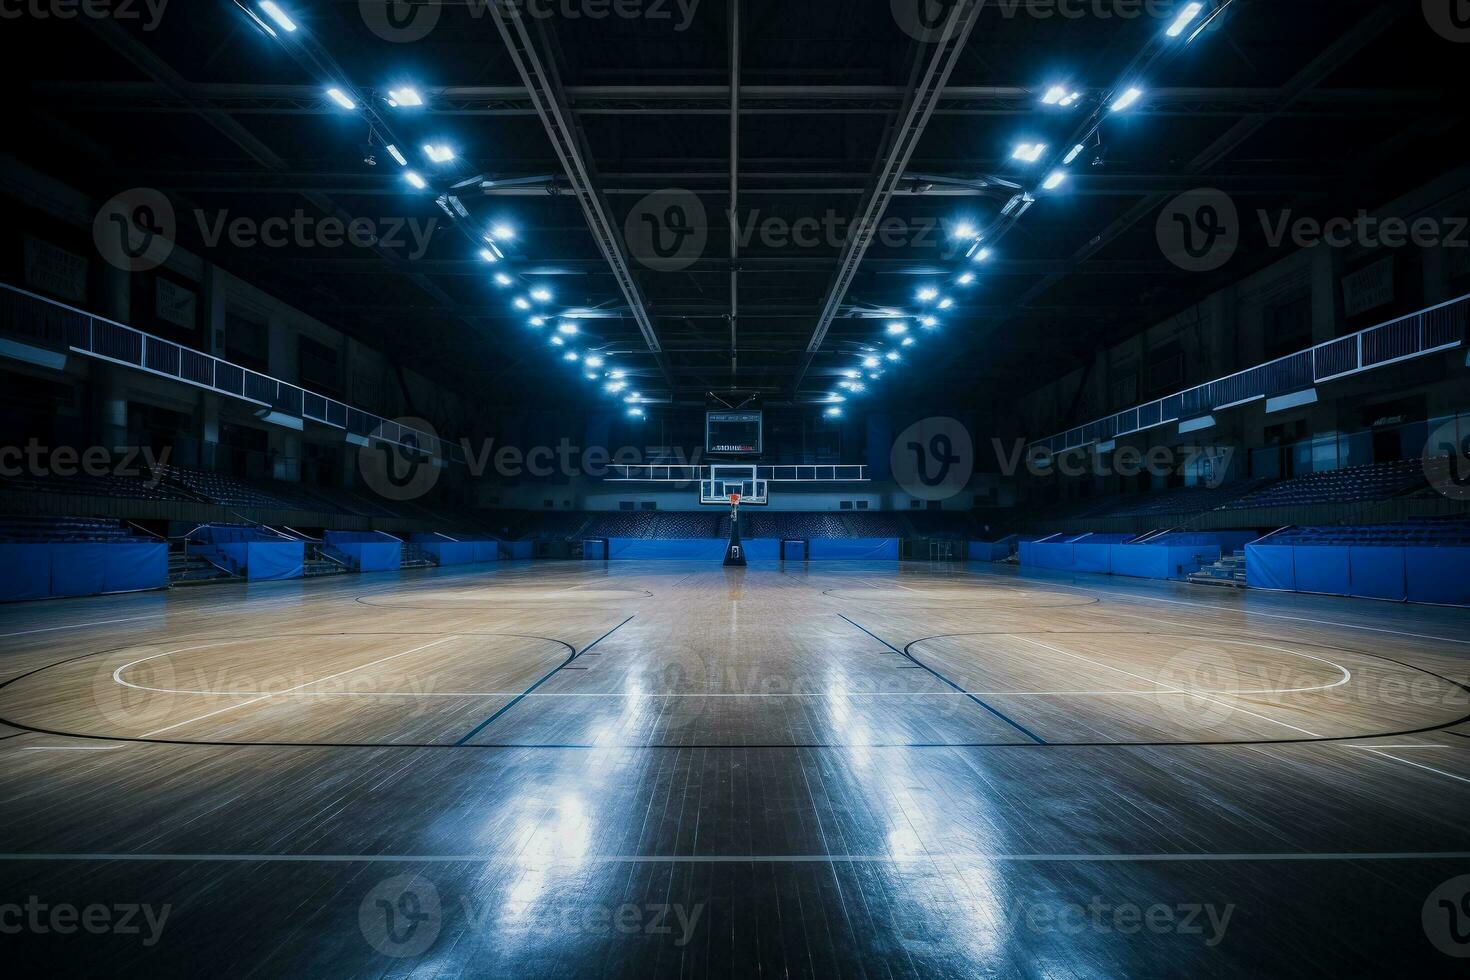 dramatiquement allumé vide basketball arène vue de gratuit jeter ligne photo